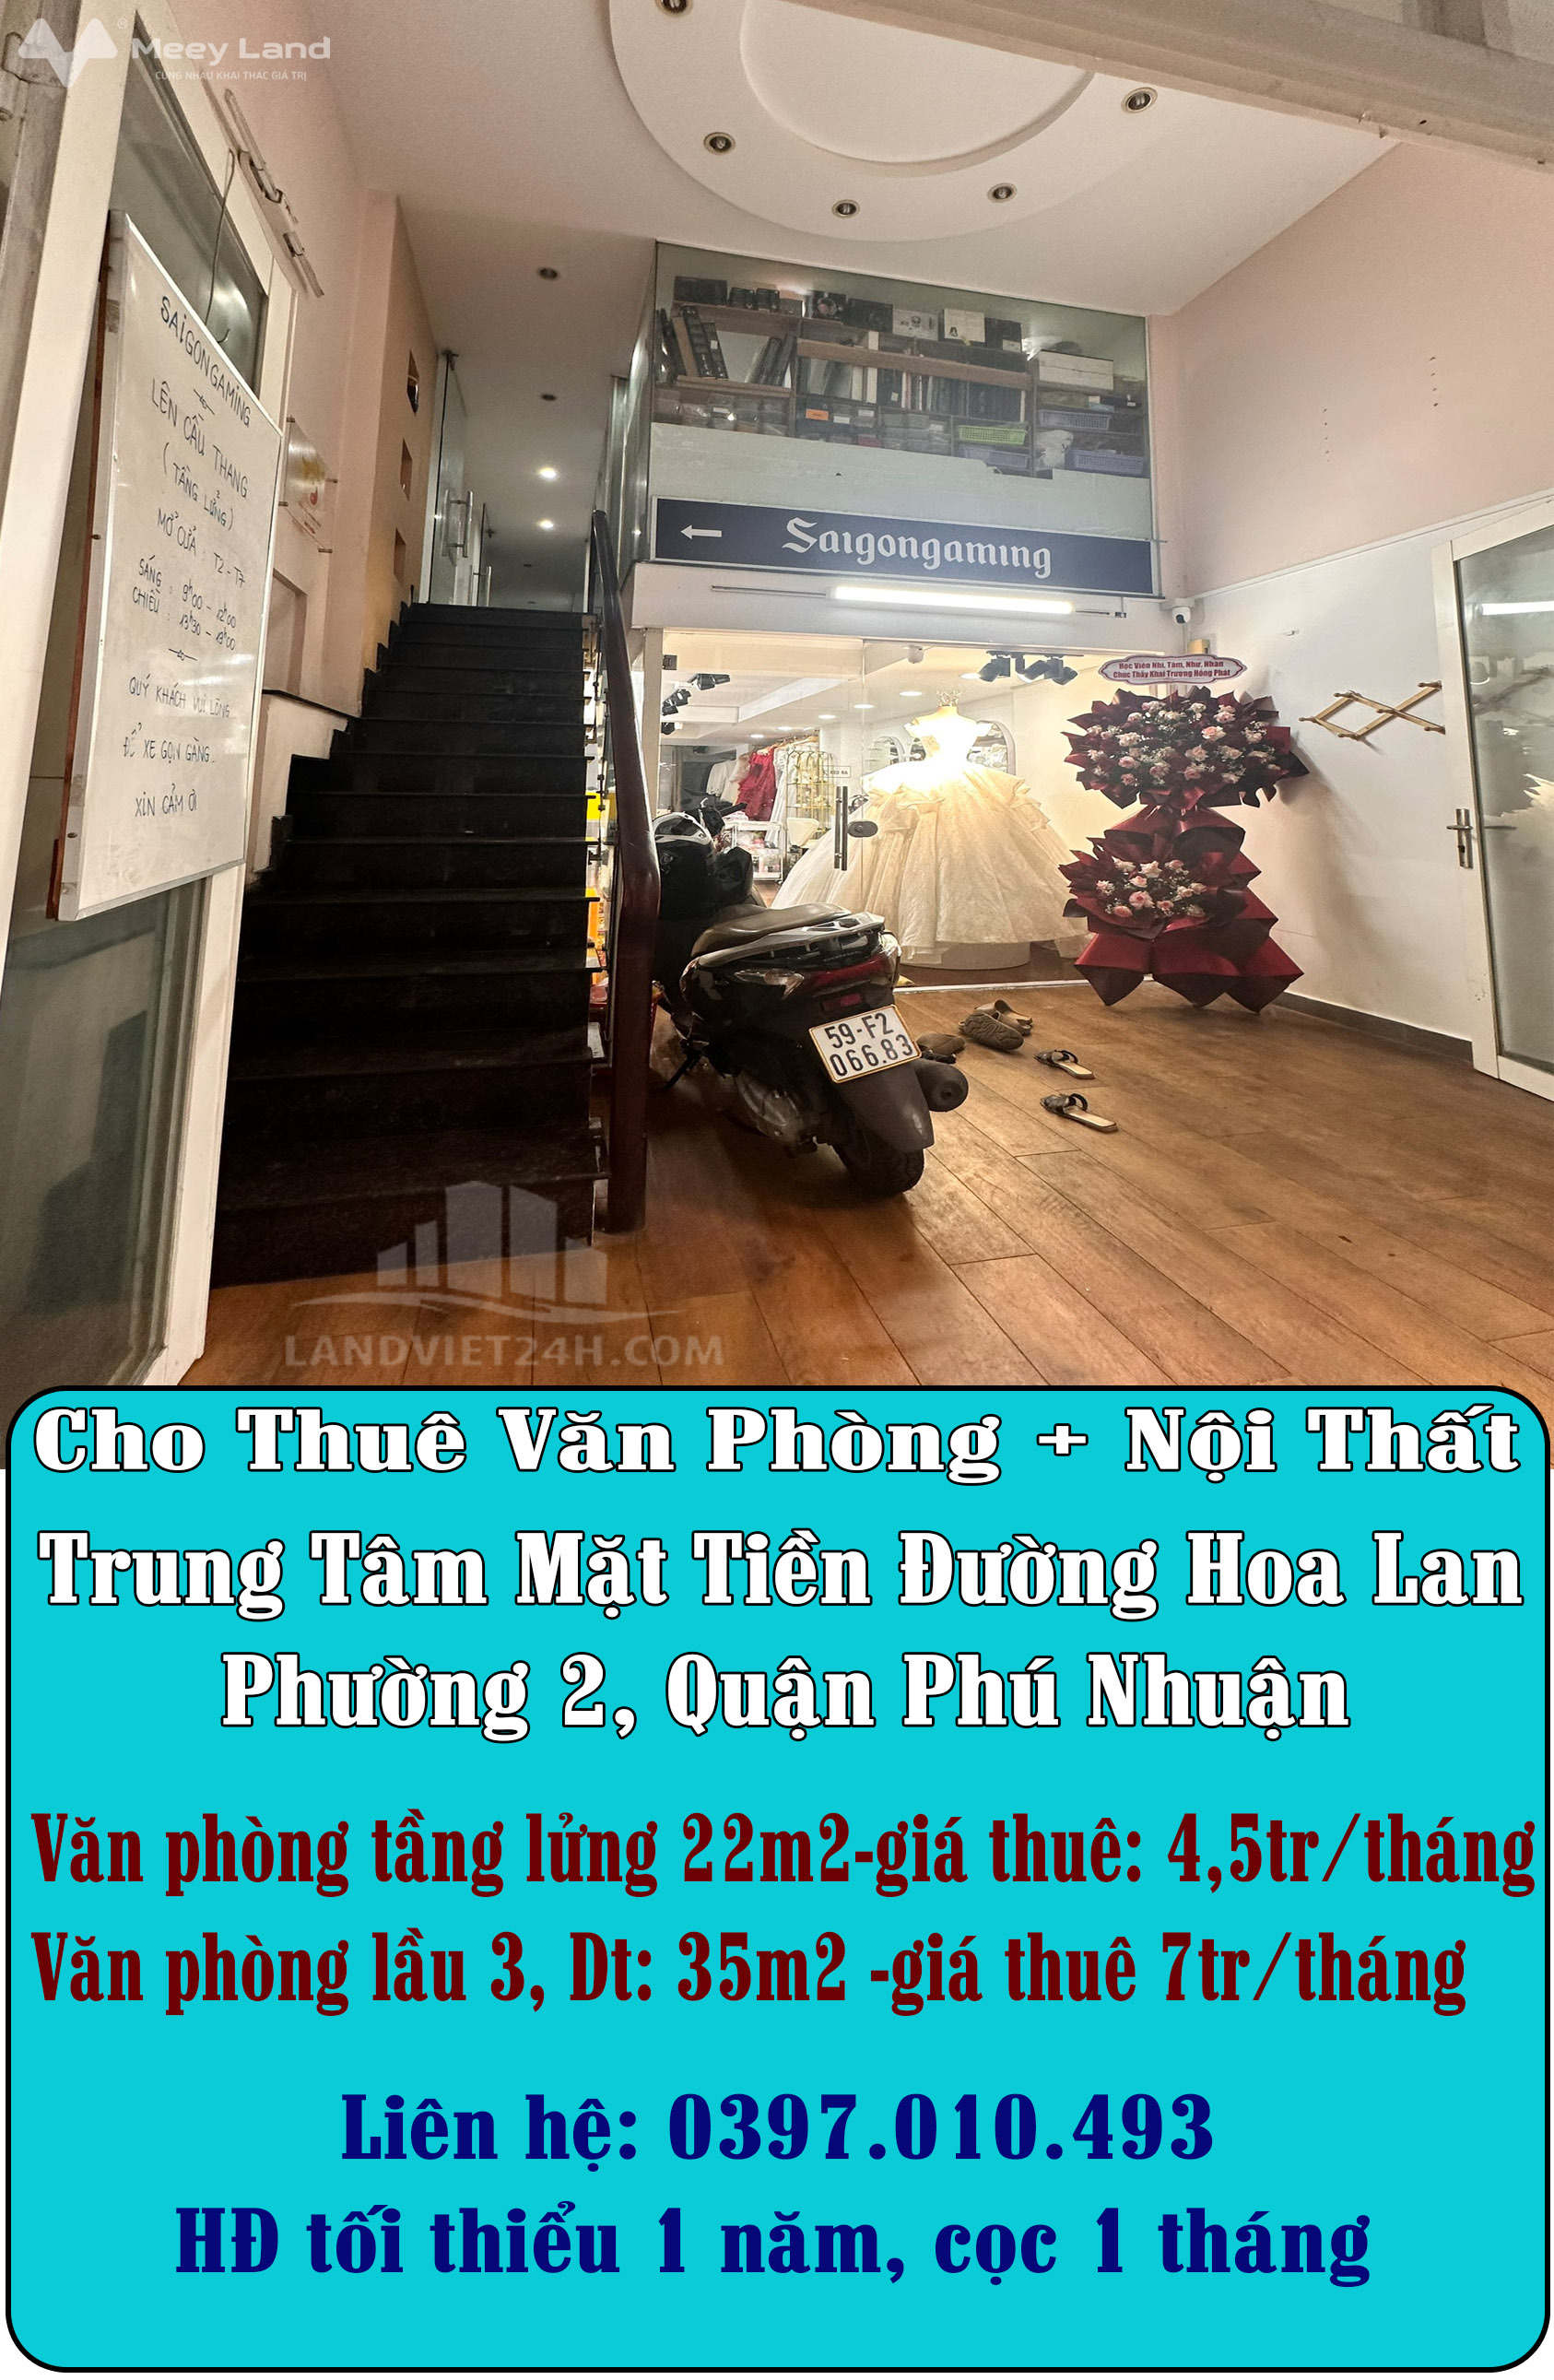 Cho thuê văn phòng + nội thất trung tâm mặt tiền đường Hoa Lan, Phường 2, Quận Phú Nhuận-01